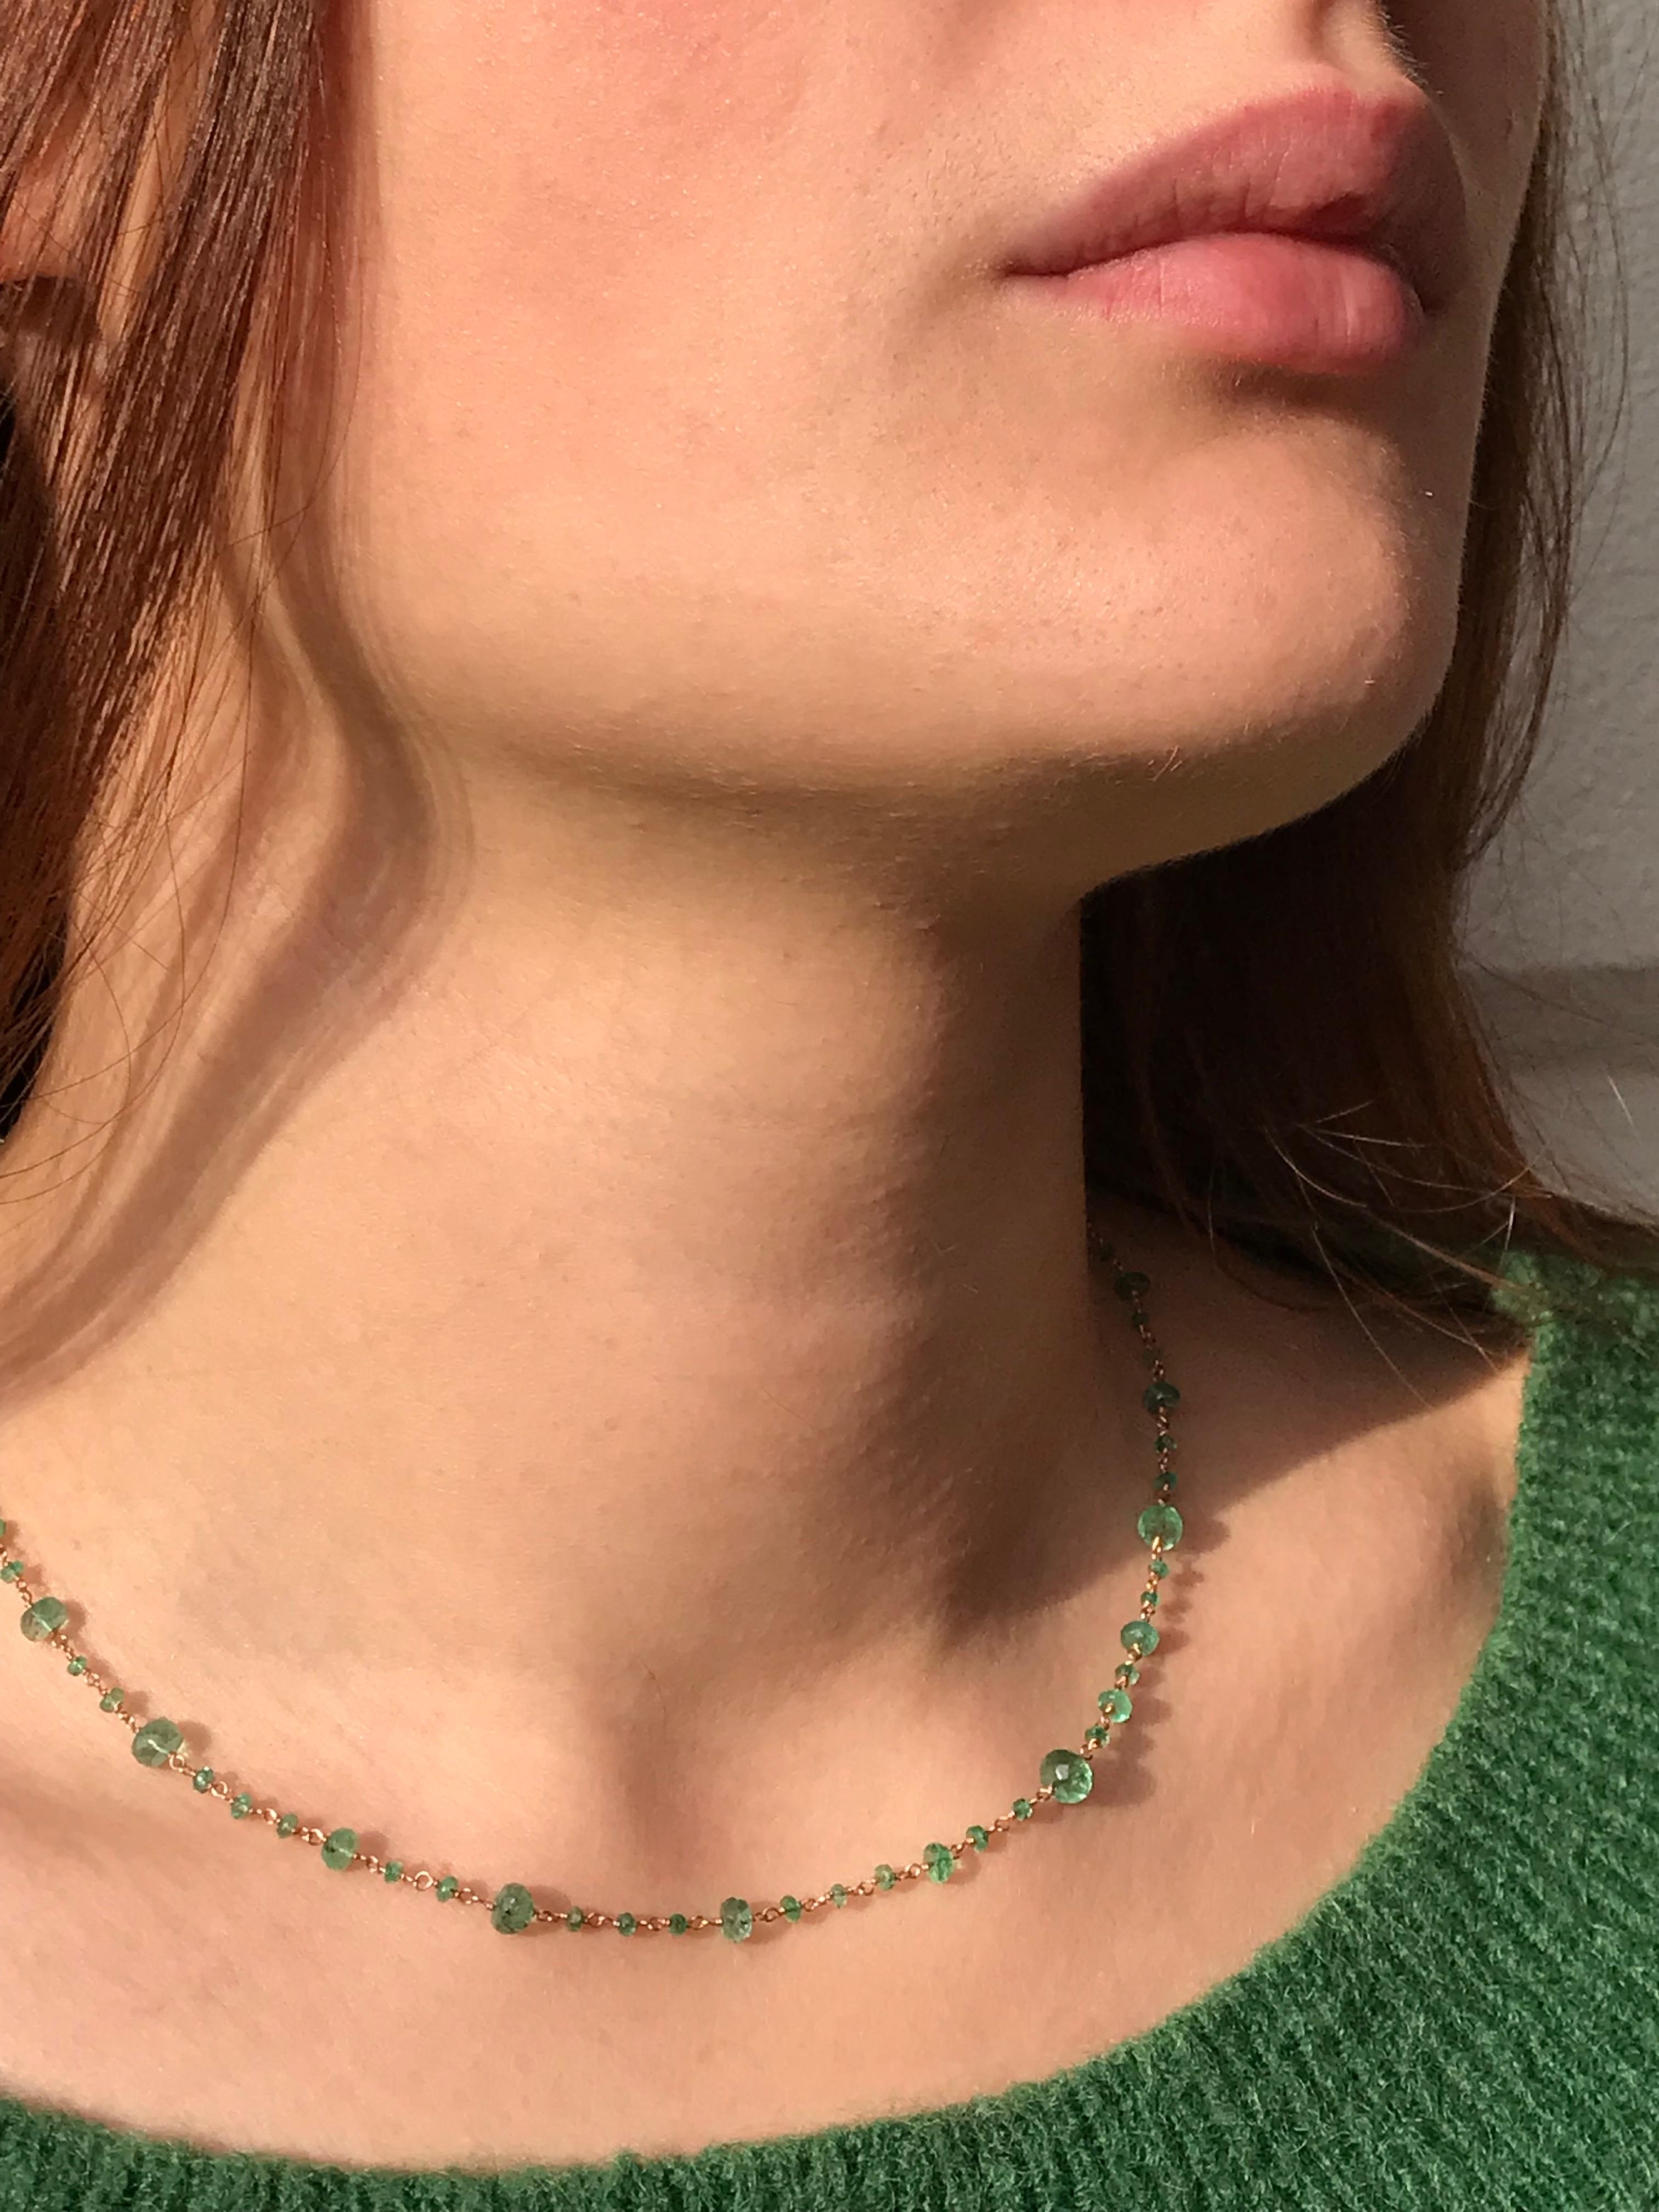 Collier artisanal Design/One composé de perles à facettes de 11,95 carats d'émeraudes de différentes dimensions et d'or rose 18 carats en forme de chapelet. 
La longueur du collier est de 41,5 cm.
Perles à facettes émeraude de 2,5 à 5 mm.
Ce collier